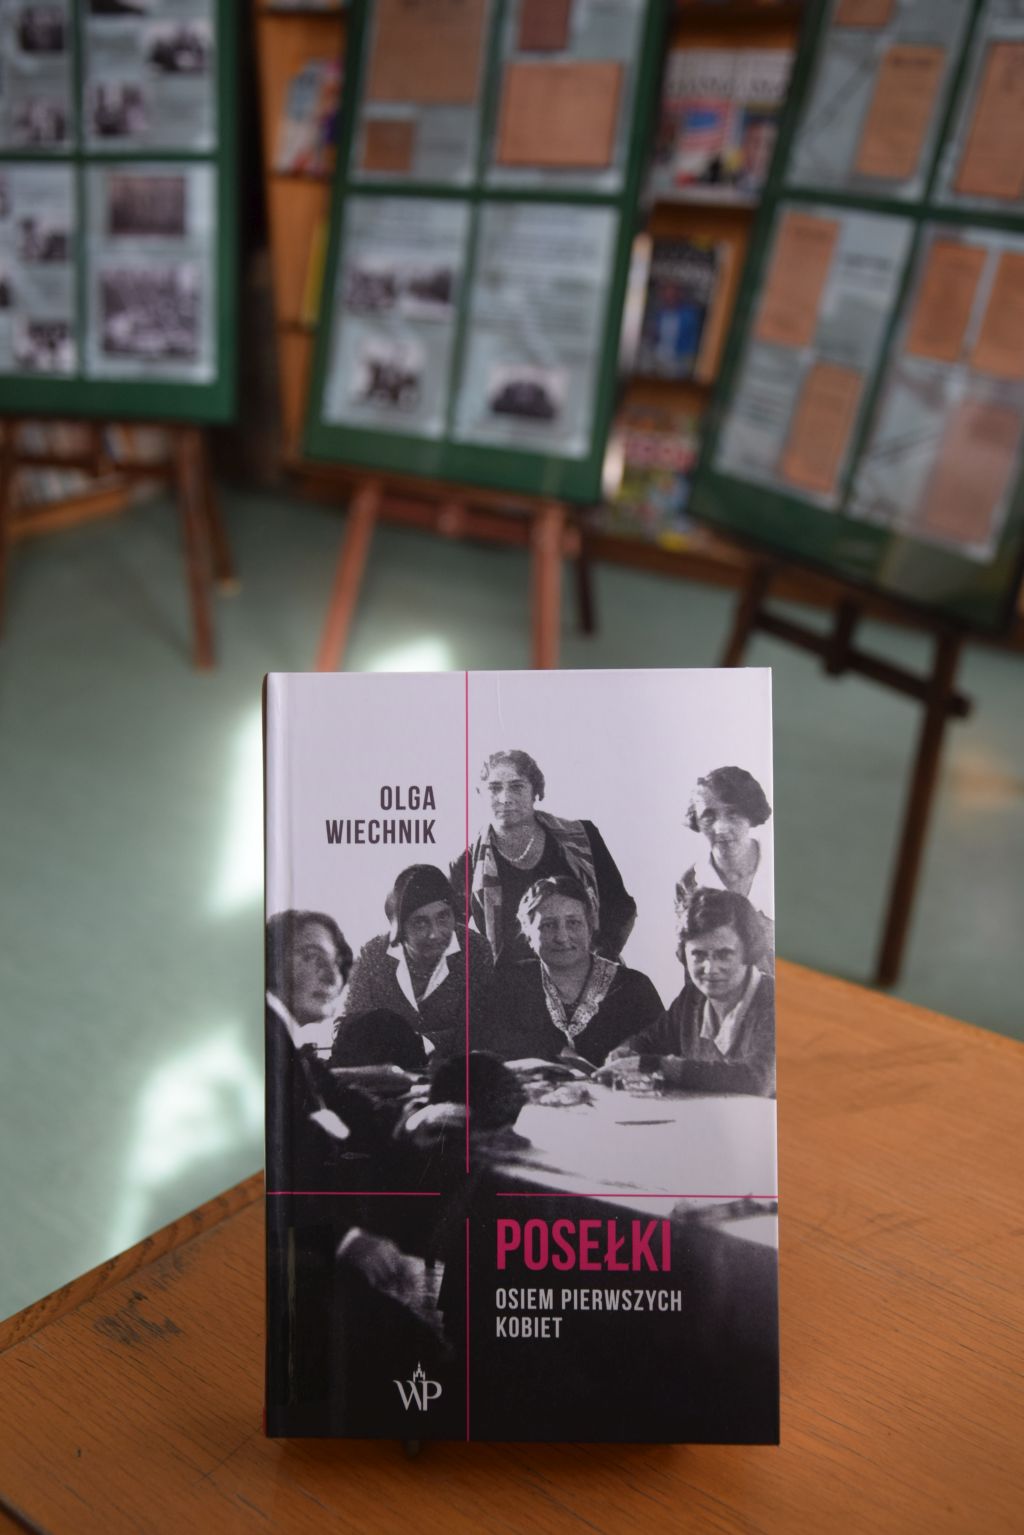 Okładka książki: Olga Wiechnik, "Posełki Osiem pierwszych kobiet", Wydawnictwo Poznańskie, Poznań 2019.